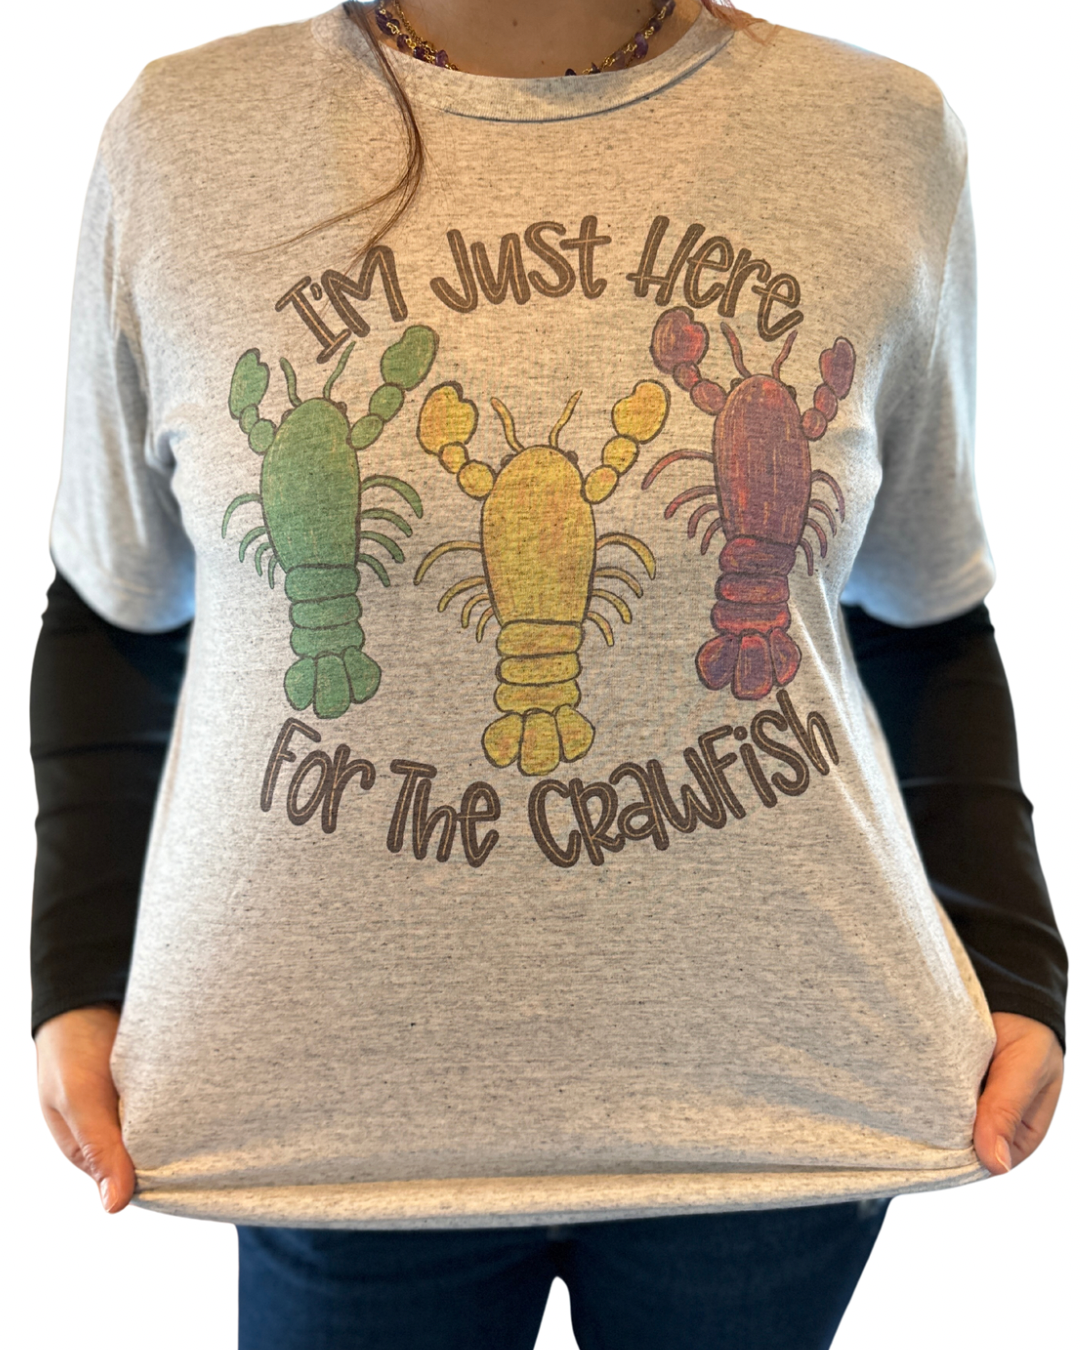 Crawfish Mardi Gras Shirt